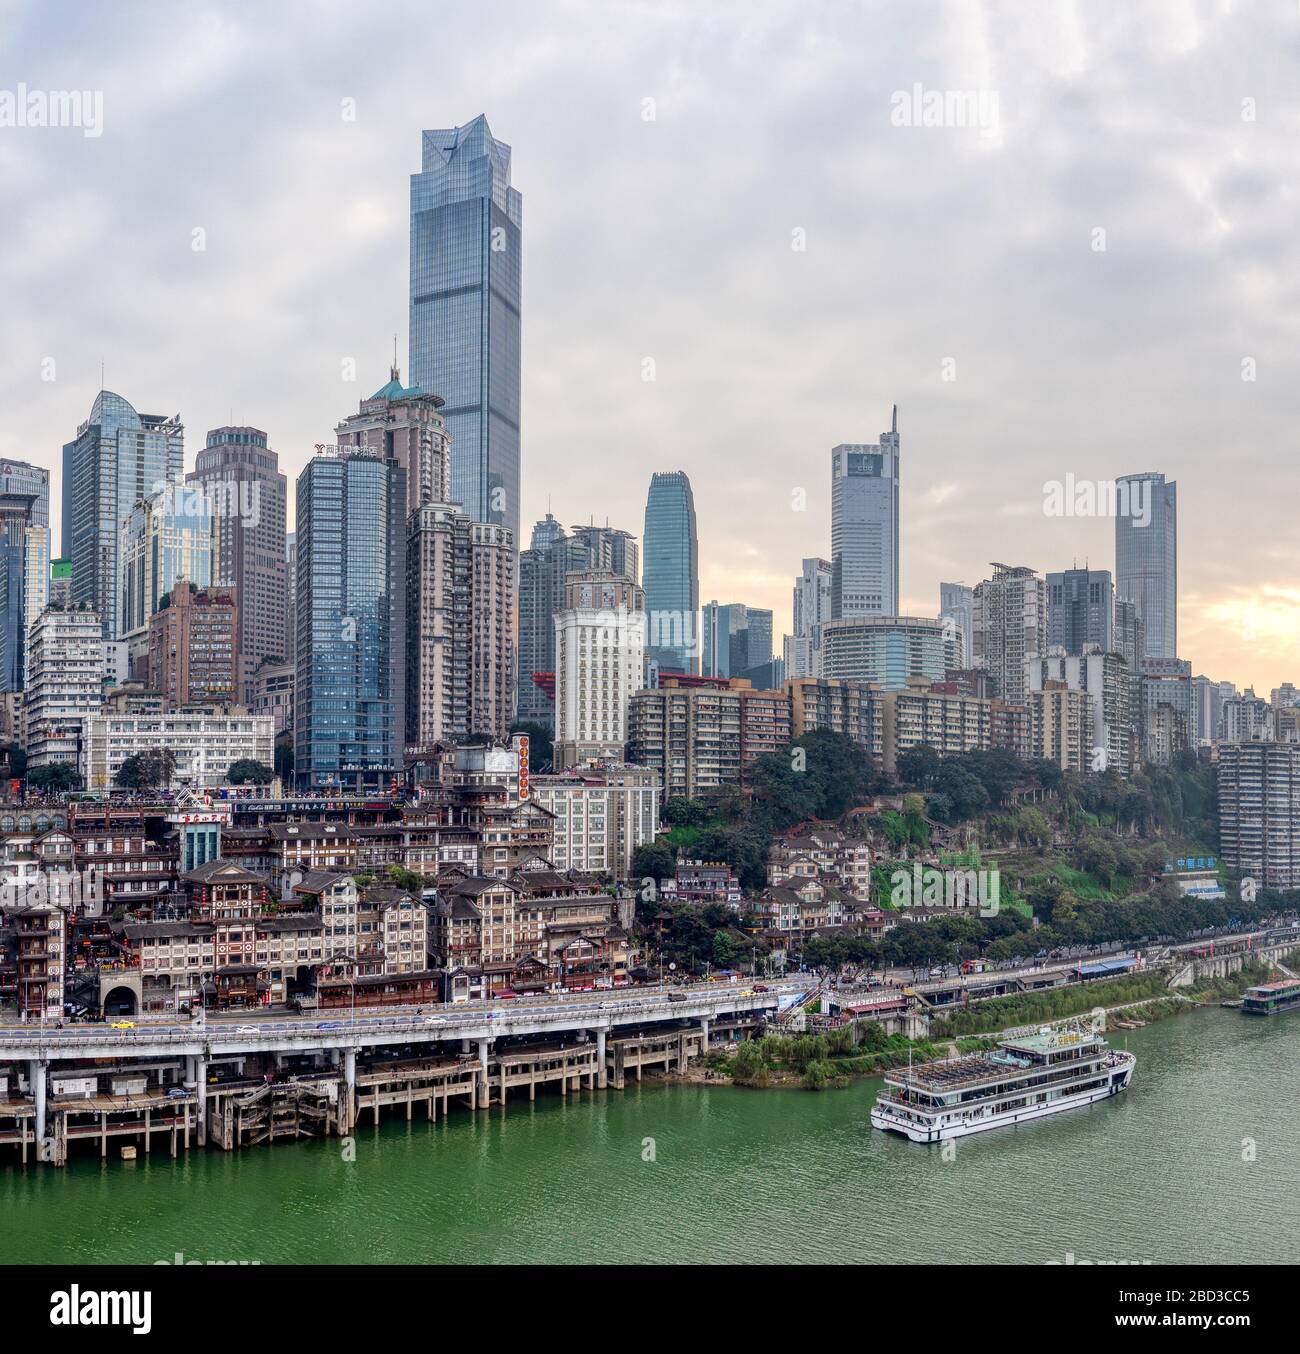 Chongqing, China - Dec 22, 2019: CBD Skyscrapers near Hongya dong cave by Jialing river Stock Photo